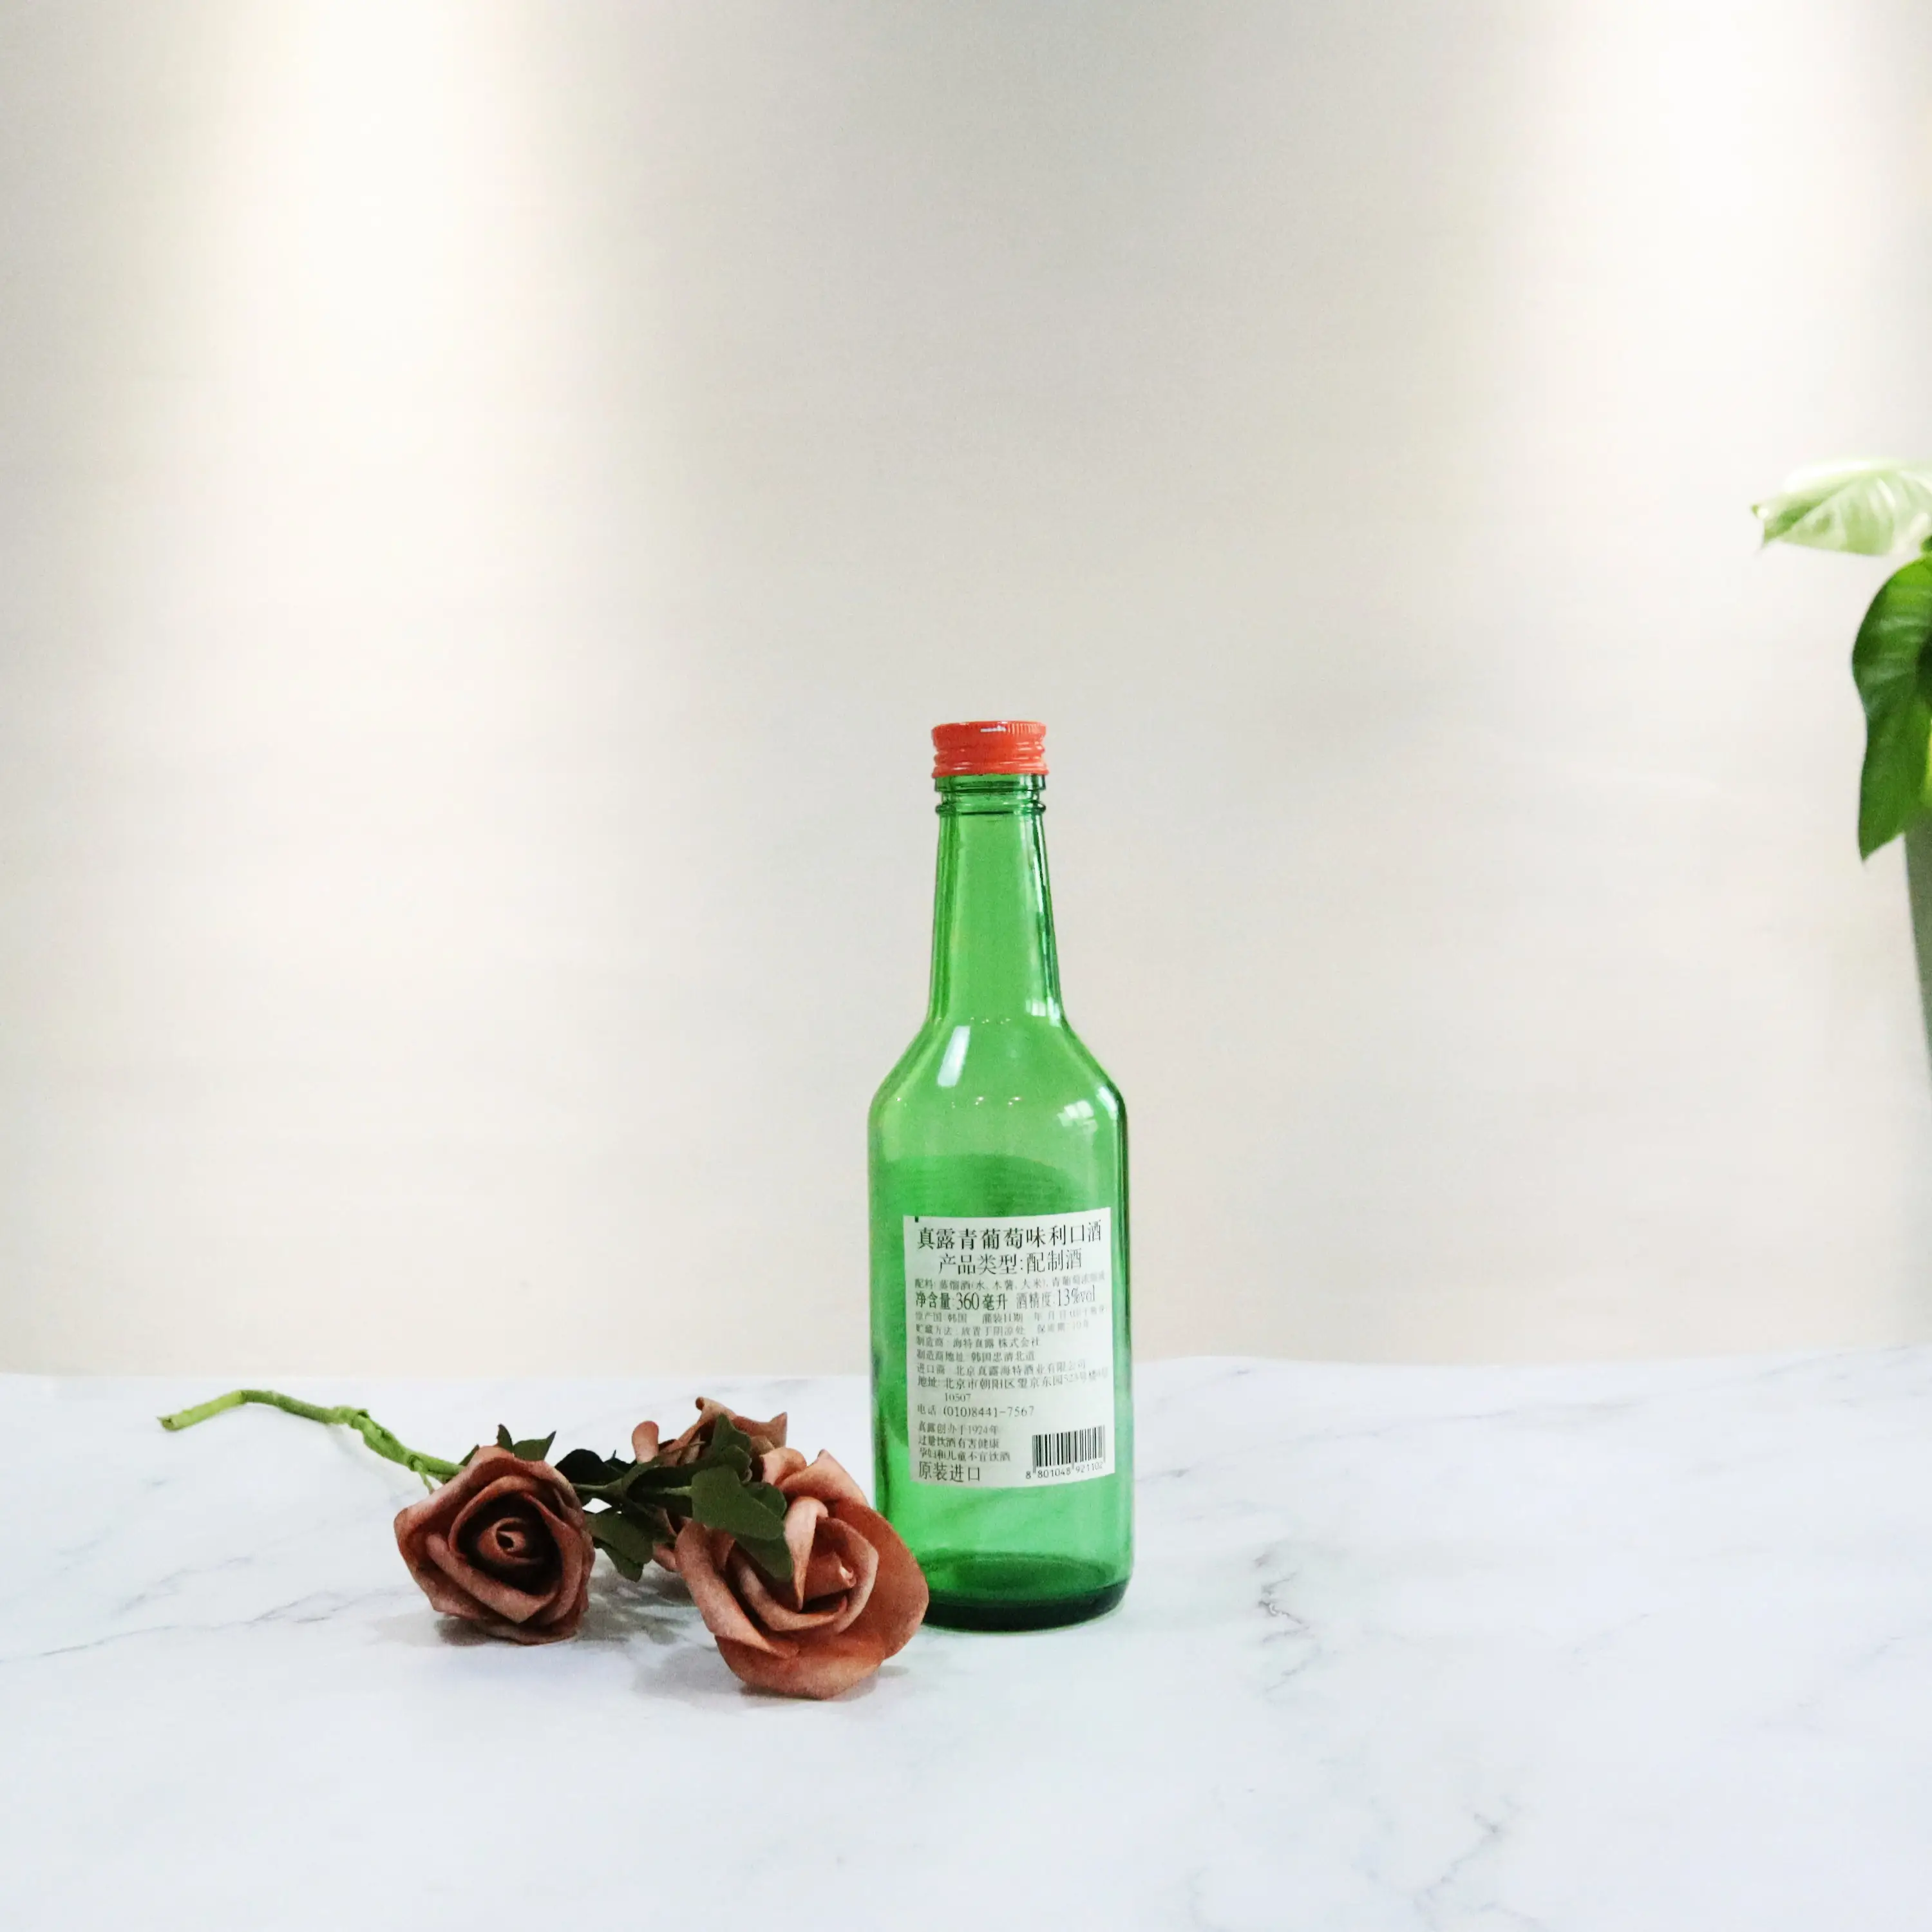 Yeşil cam kore Sujo şişe Sake ruh yuvarlak şişe vidalı kapak